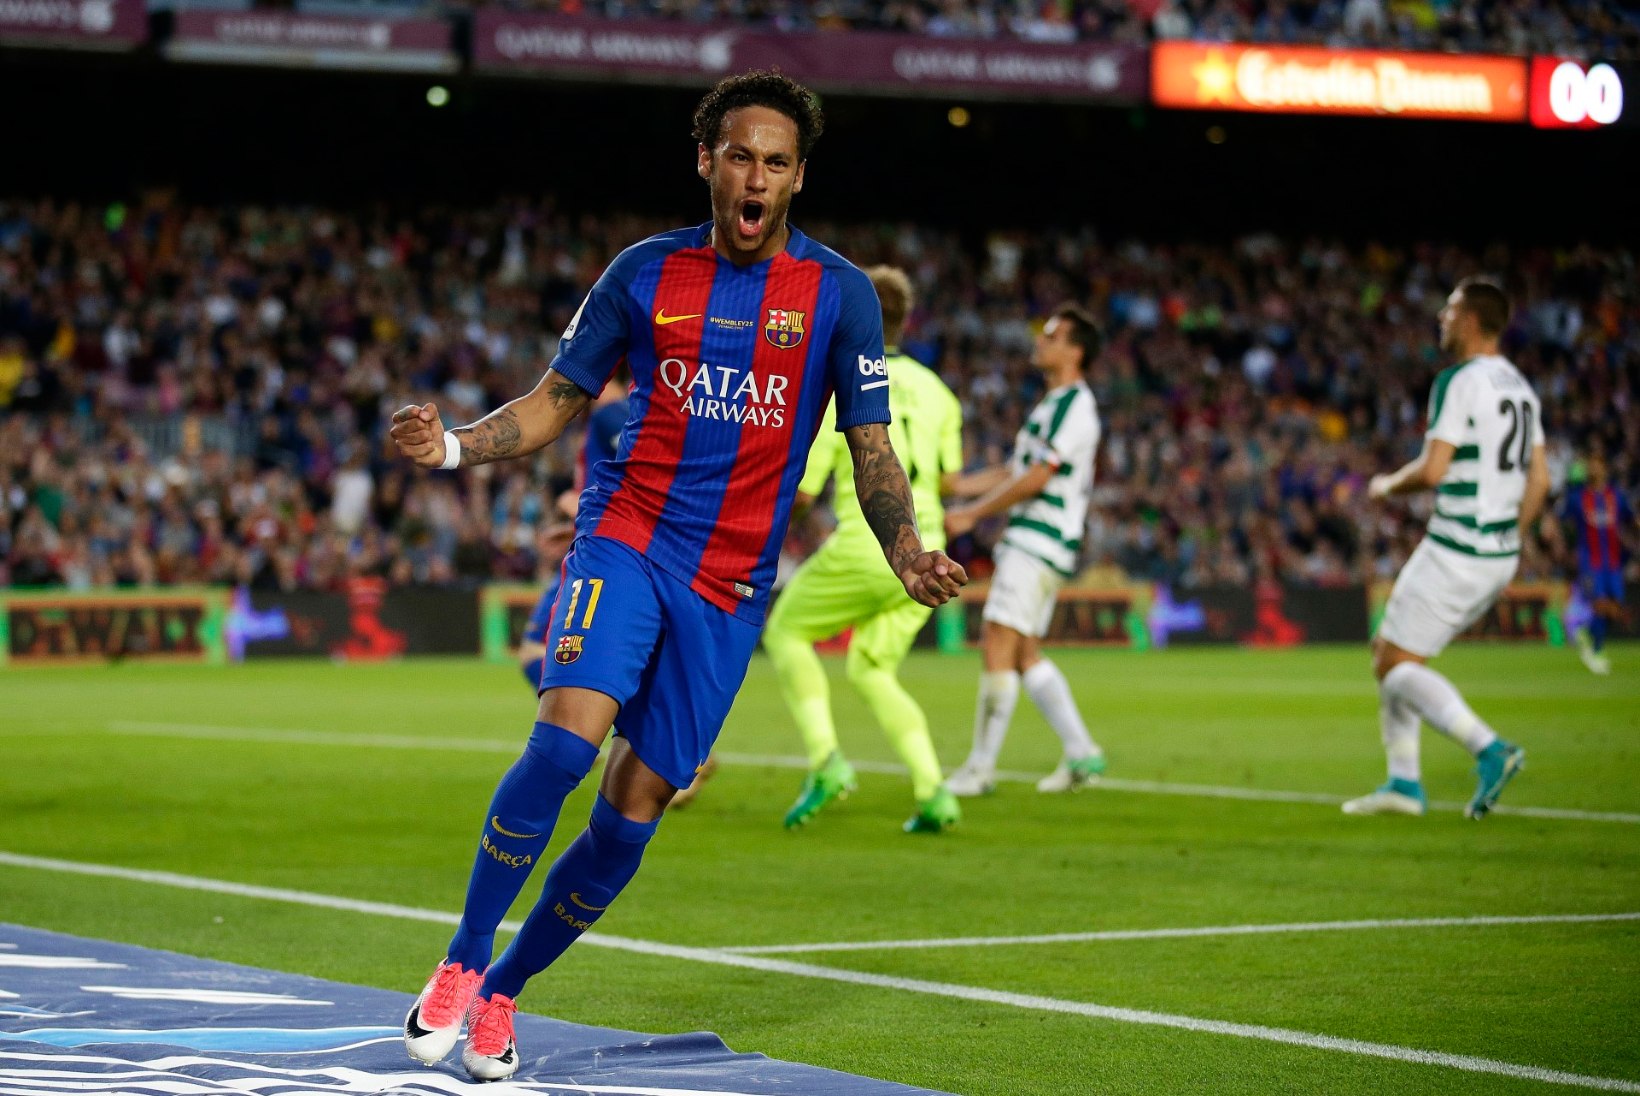 KUULUJUTUVESKI | VAU! PSG on nõus Barcelonale Neymari eest maksma 222 miljonit eurot